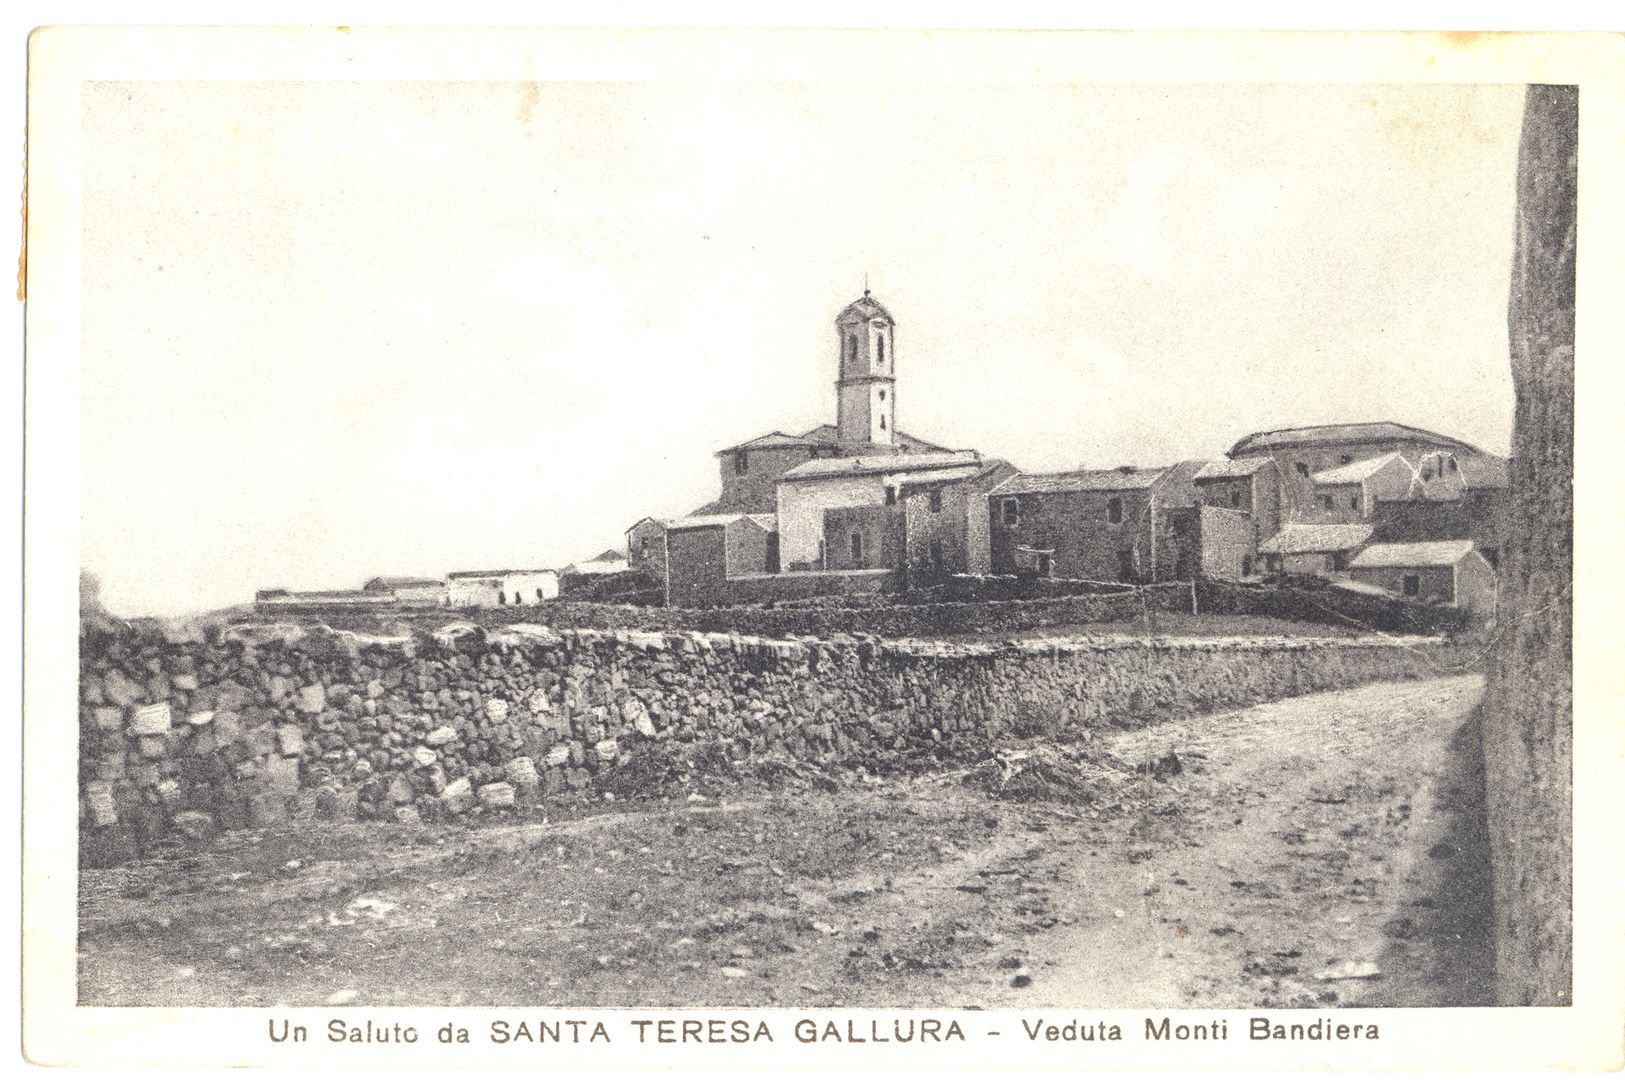 coll. Archives historiques de Santa Teresa